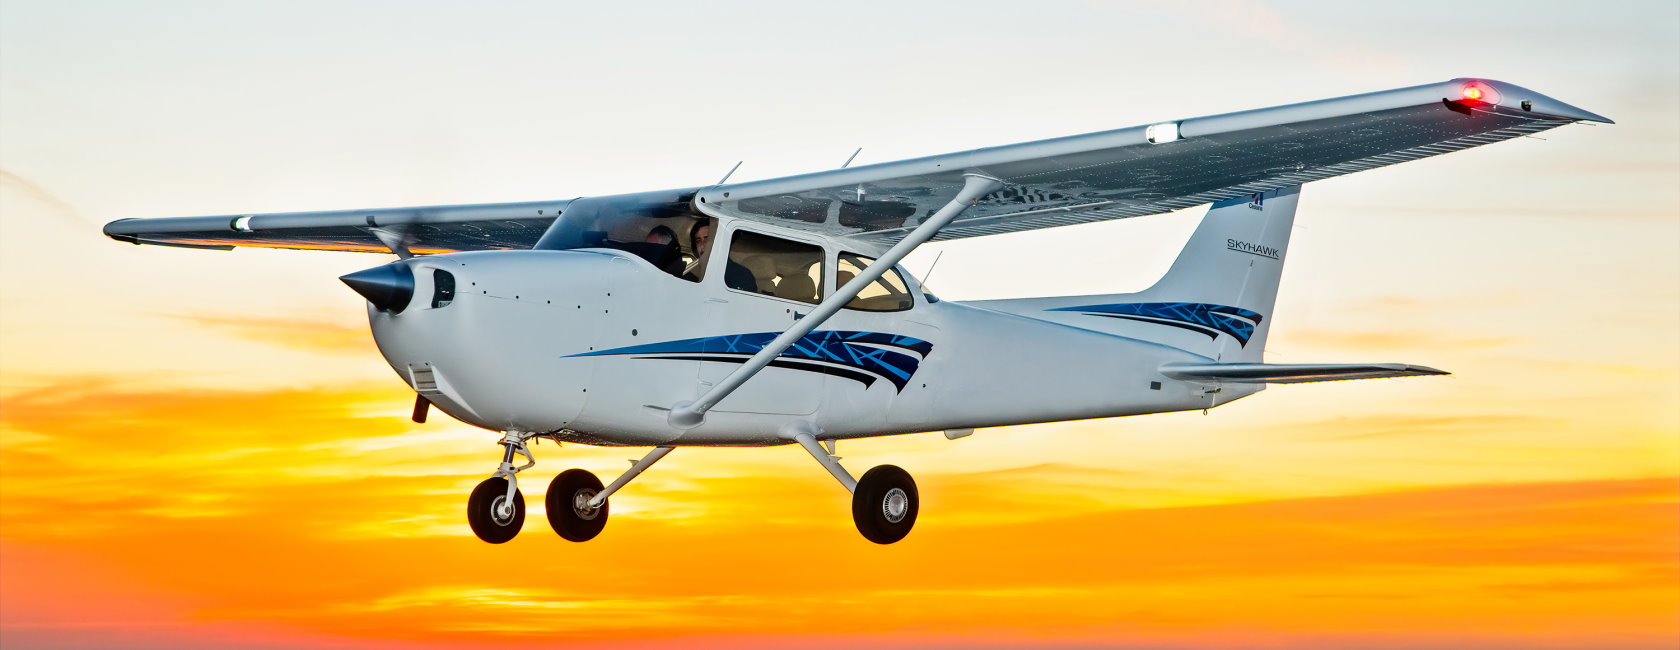 Textron Aviation, Çin’den 20 adet Cessna Skyhawk uçağı siparişi aldı